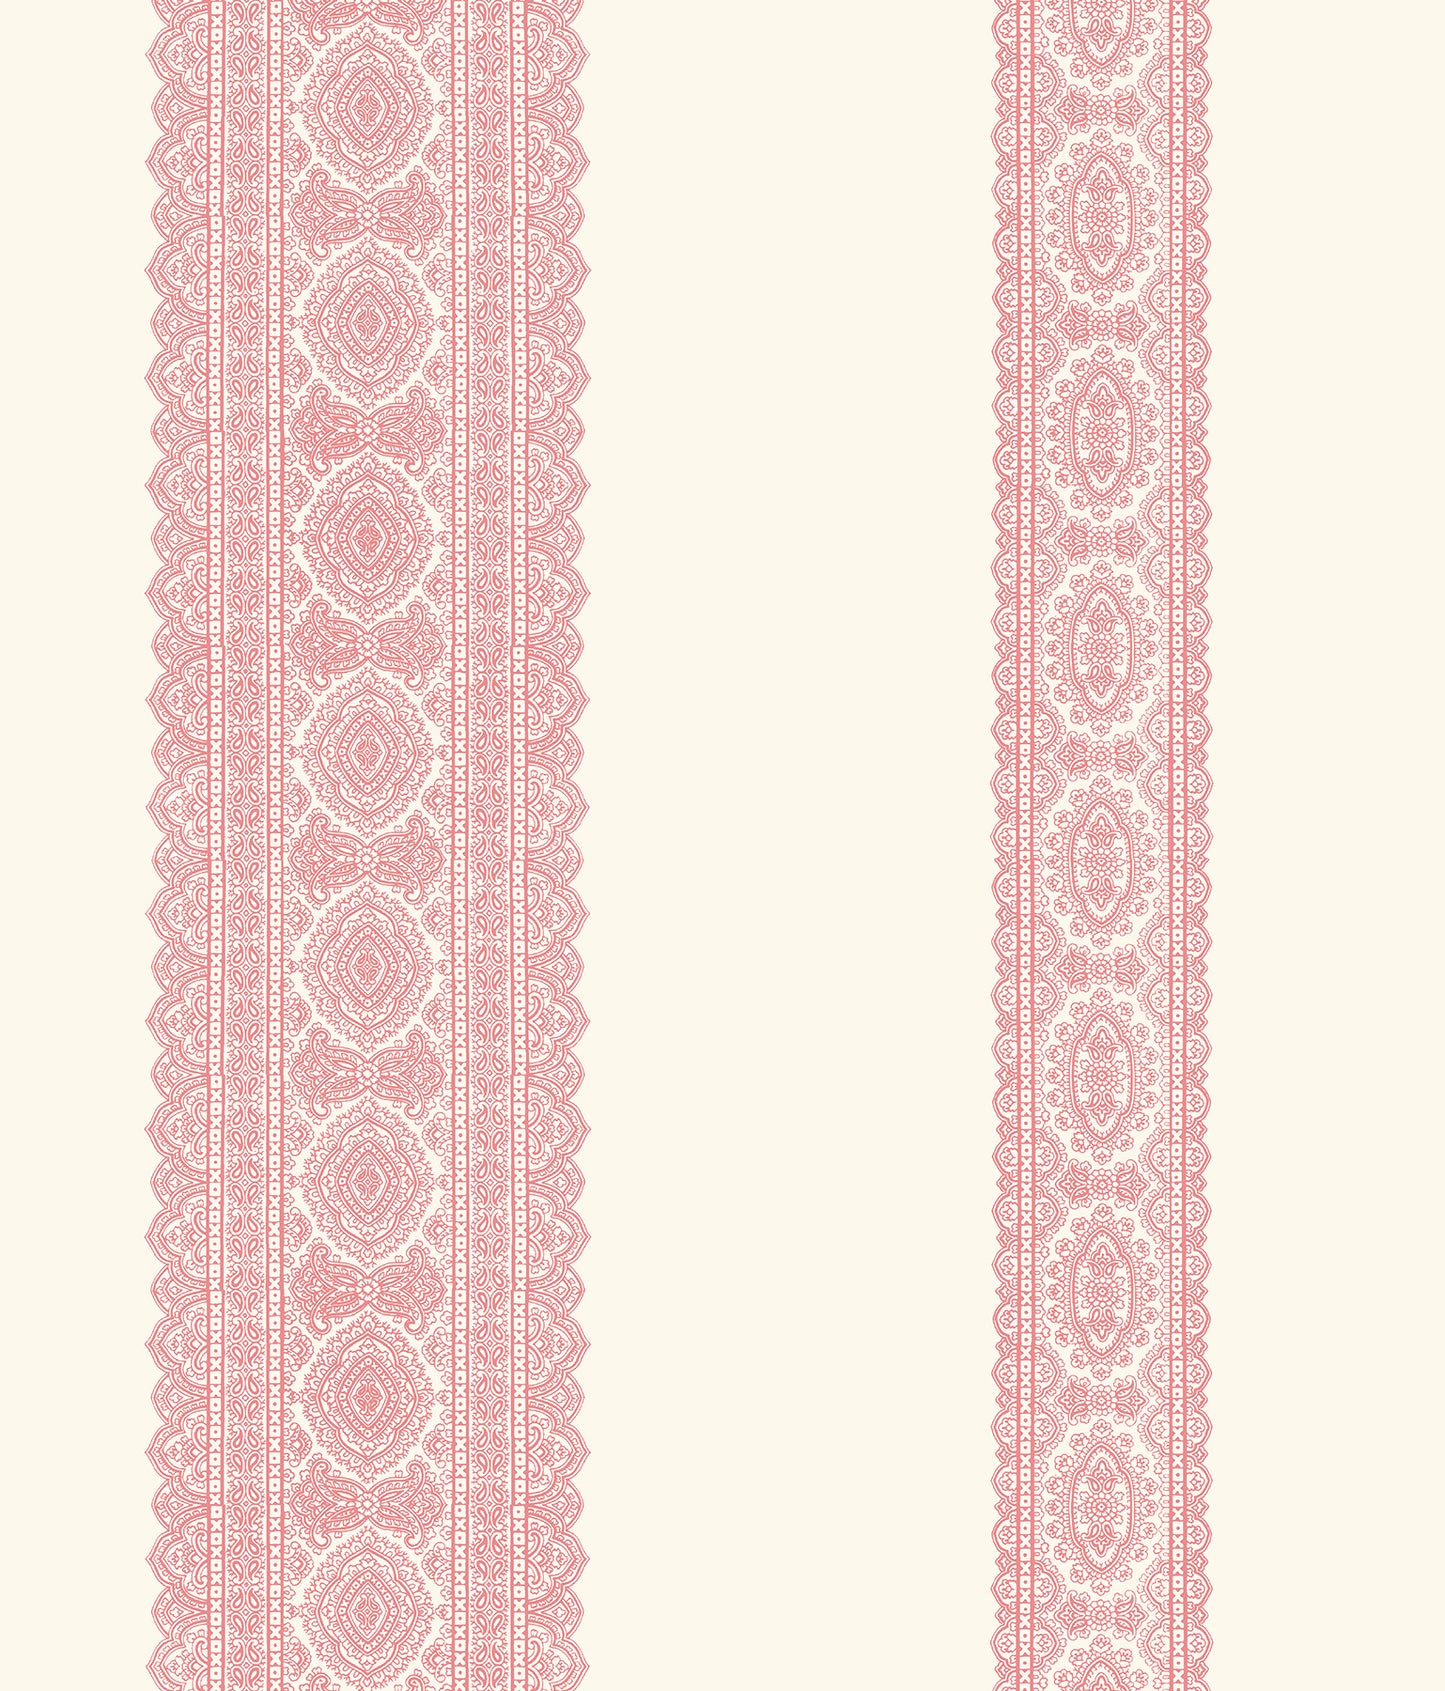 Order 1014-001831 Kismet Pink Brynn Pink Paisley Stripe Wallpaper A Street Prints Wallpaper